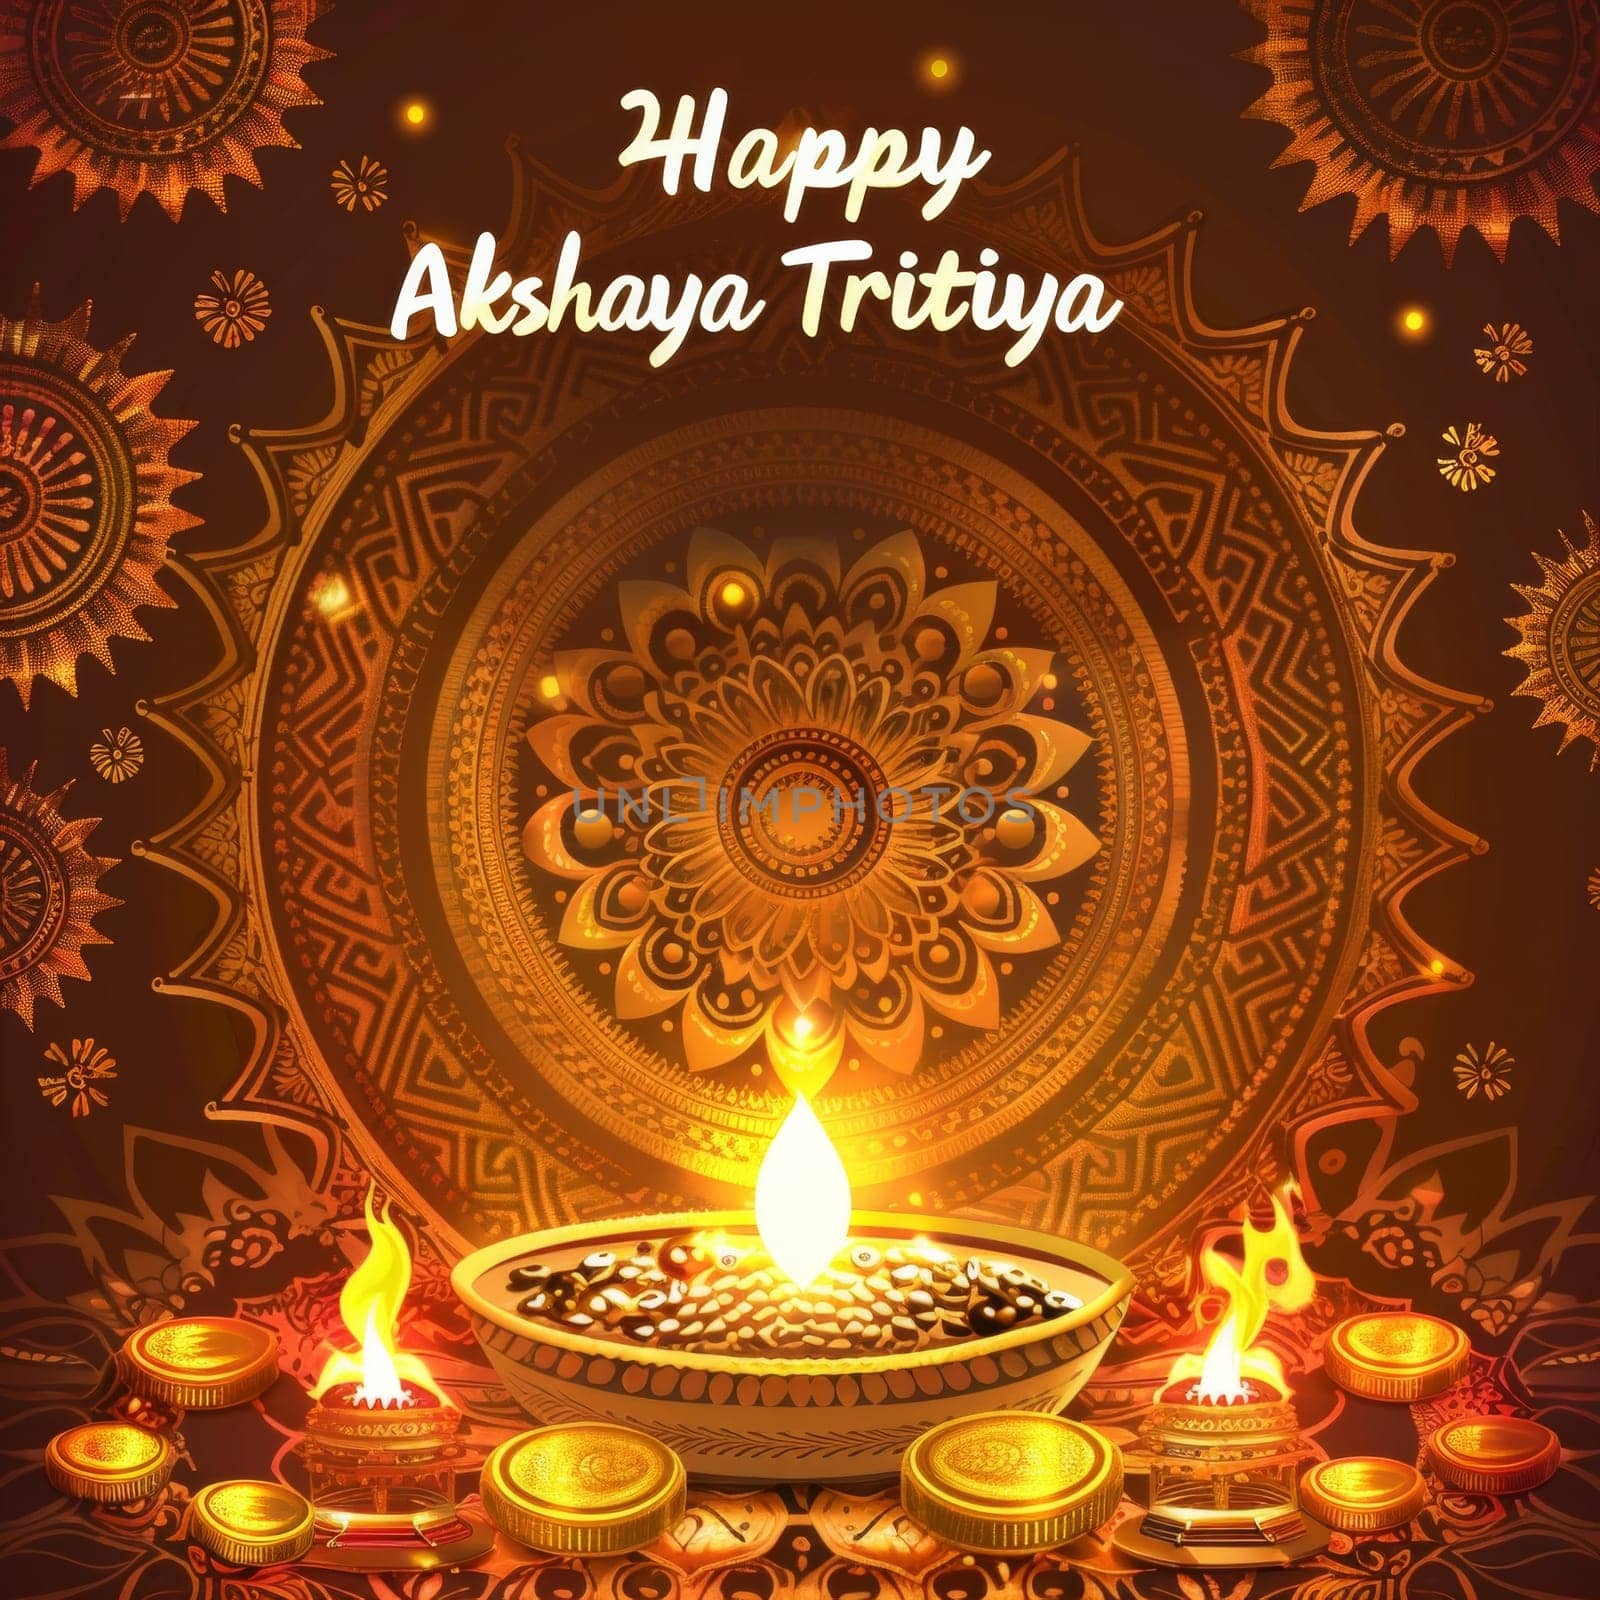 An ornate mandala and glowing diya set the scene for Akshaya Tritiya wishes, surrounded by gold coins symbolizing prosperity